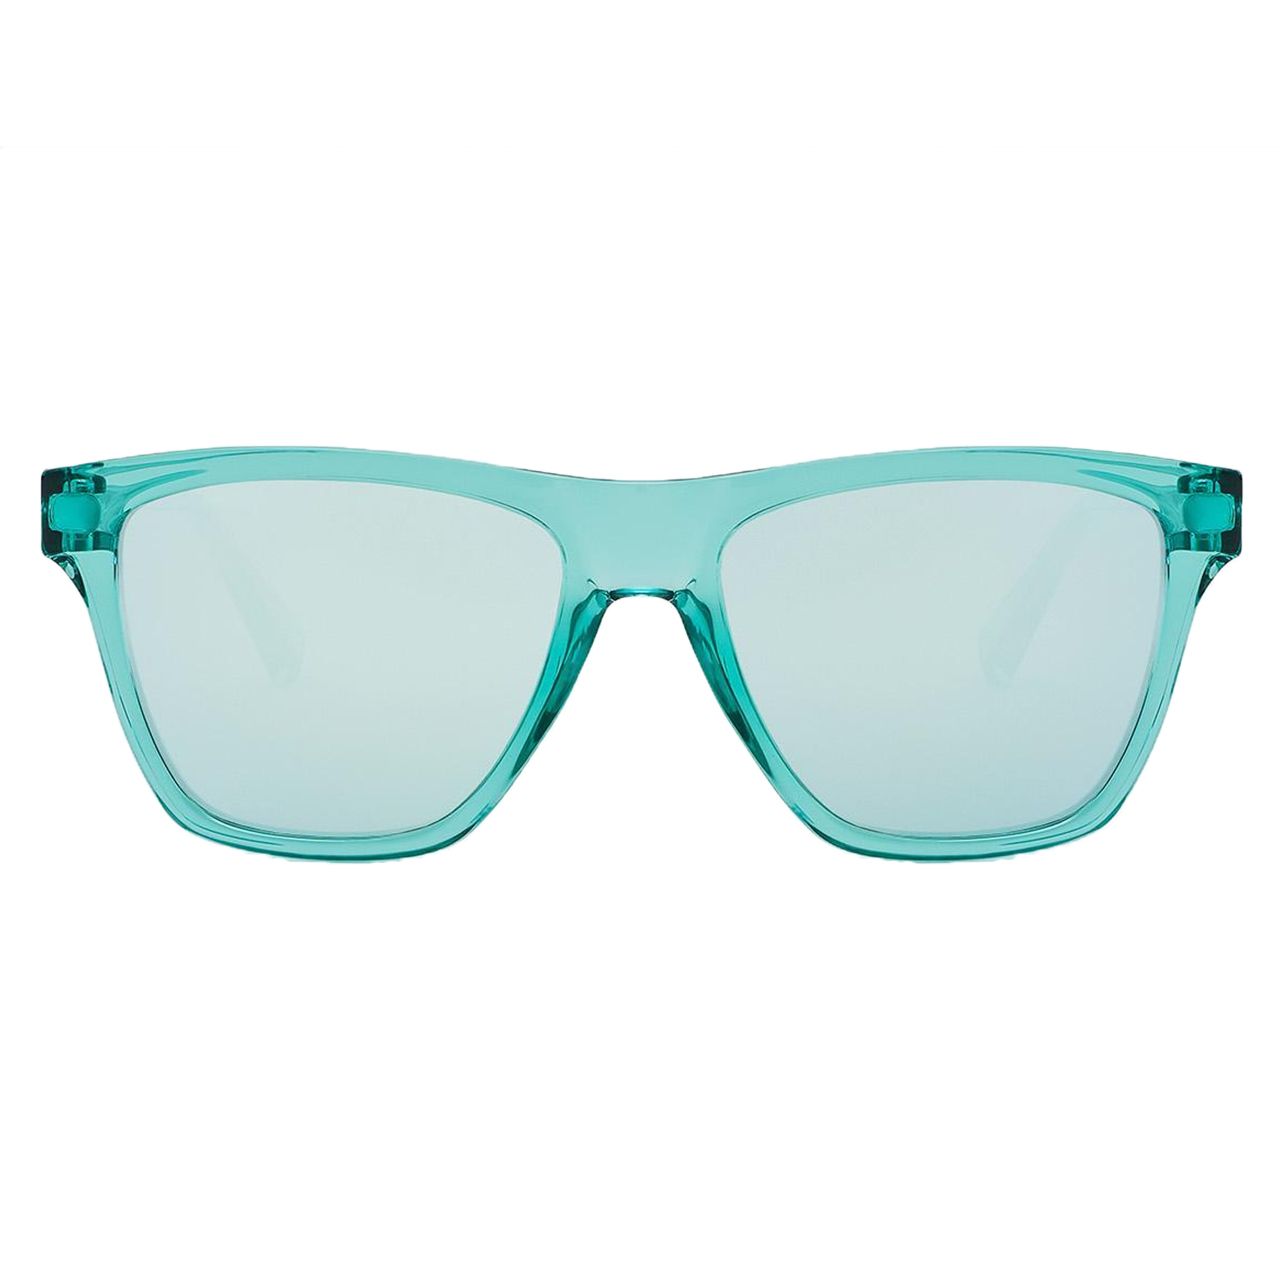  عینک آفتابی زنانه هاوکرز سری Tiffany Blue Chrome One Ls مدل LIFTR13 -  - 1